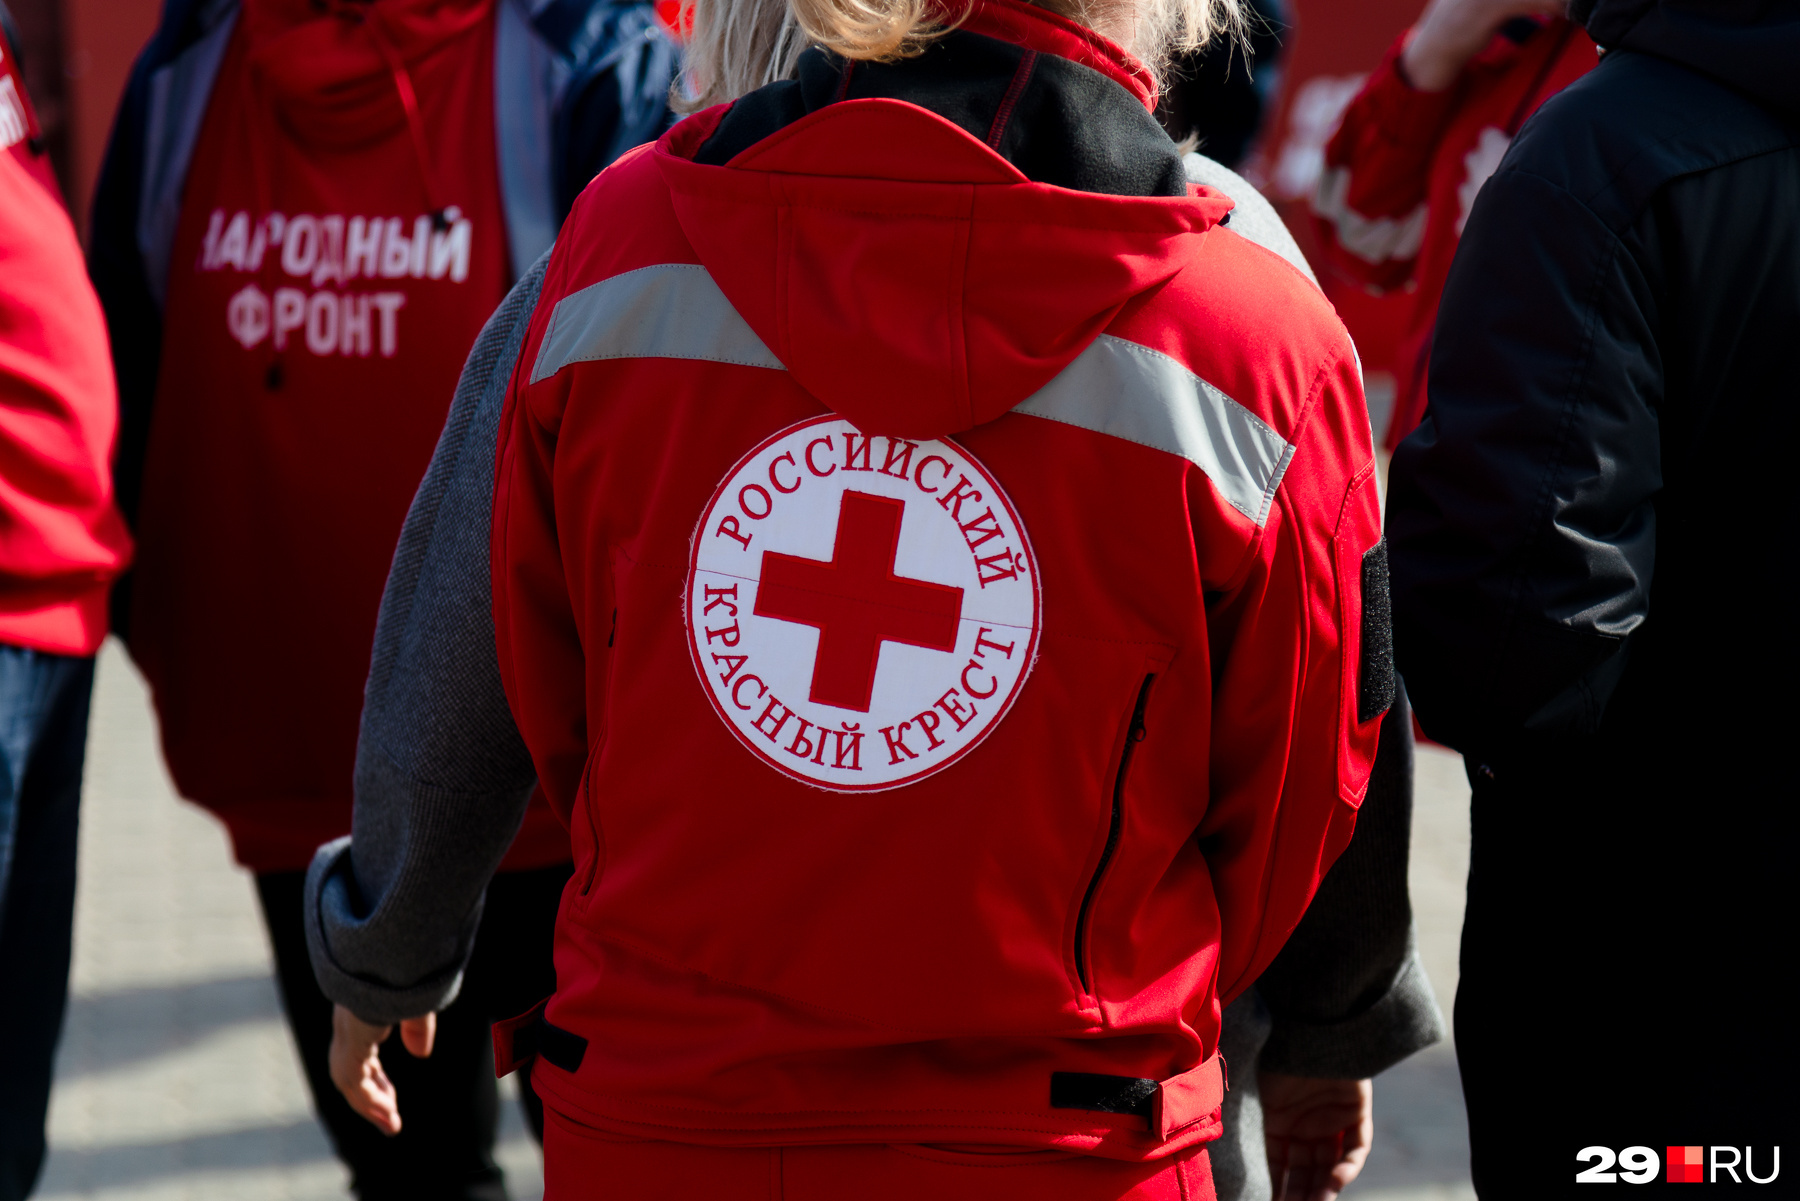 Председатель регионального отделения Российского Красного Креста Ольга Костель сообщила, что на формирование нынешней партии ушло полтора месяца